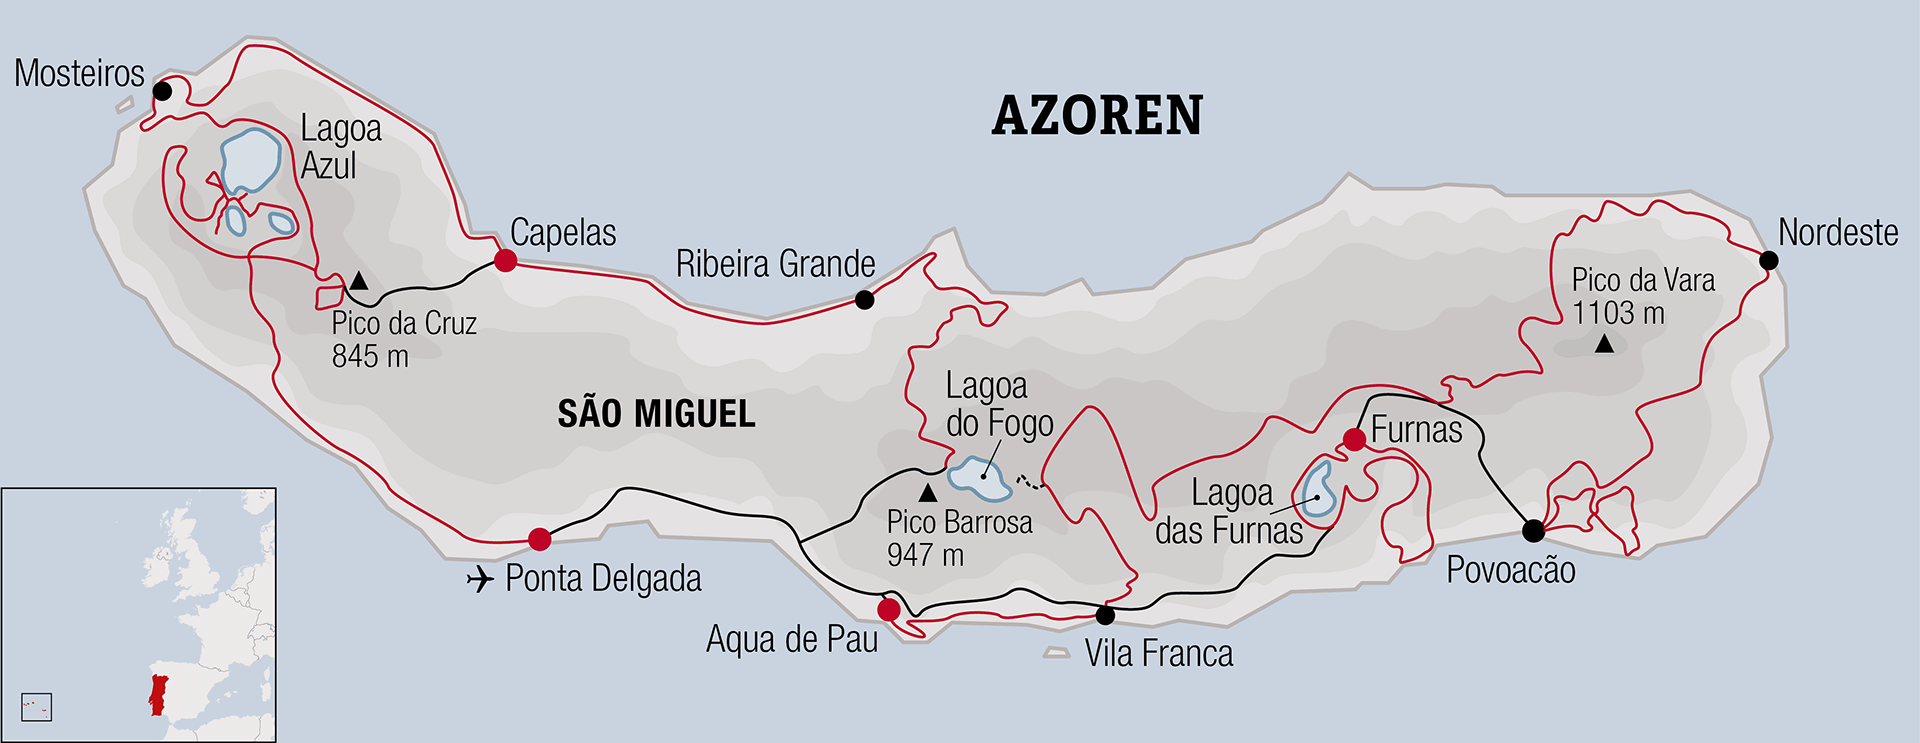 Azoren, Portugal - Bikereise Karte